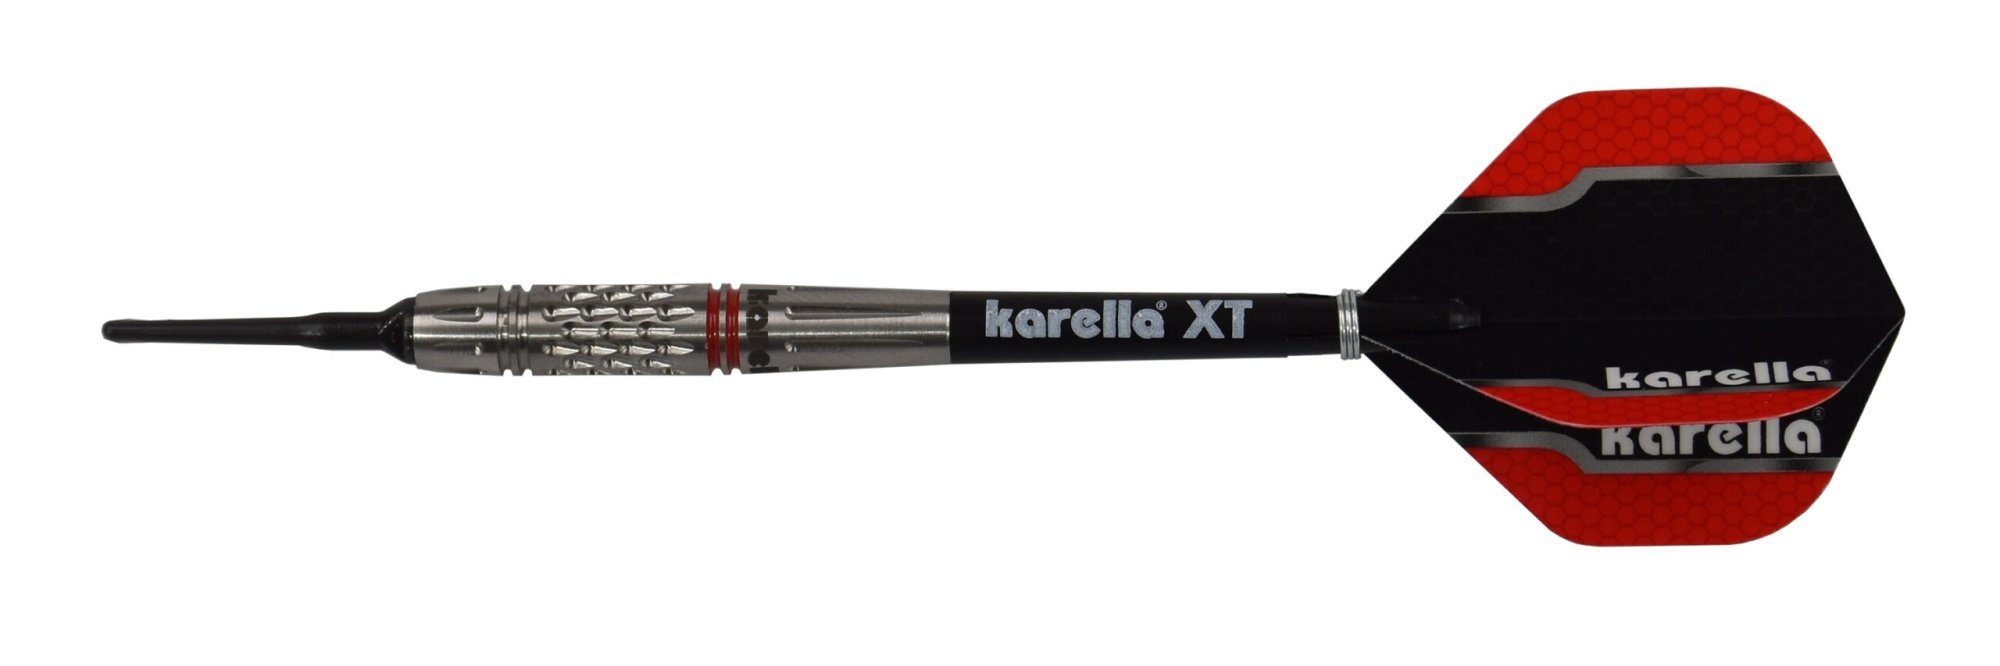 Karella Dartpfeil Softdart Karella Commander, silber, 90% Tungsten, 19g oder 21g